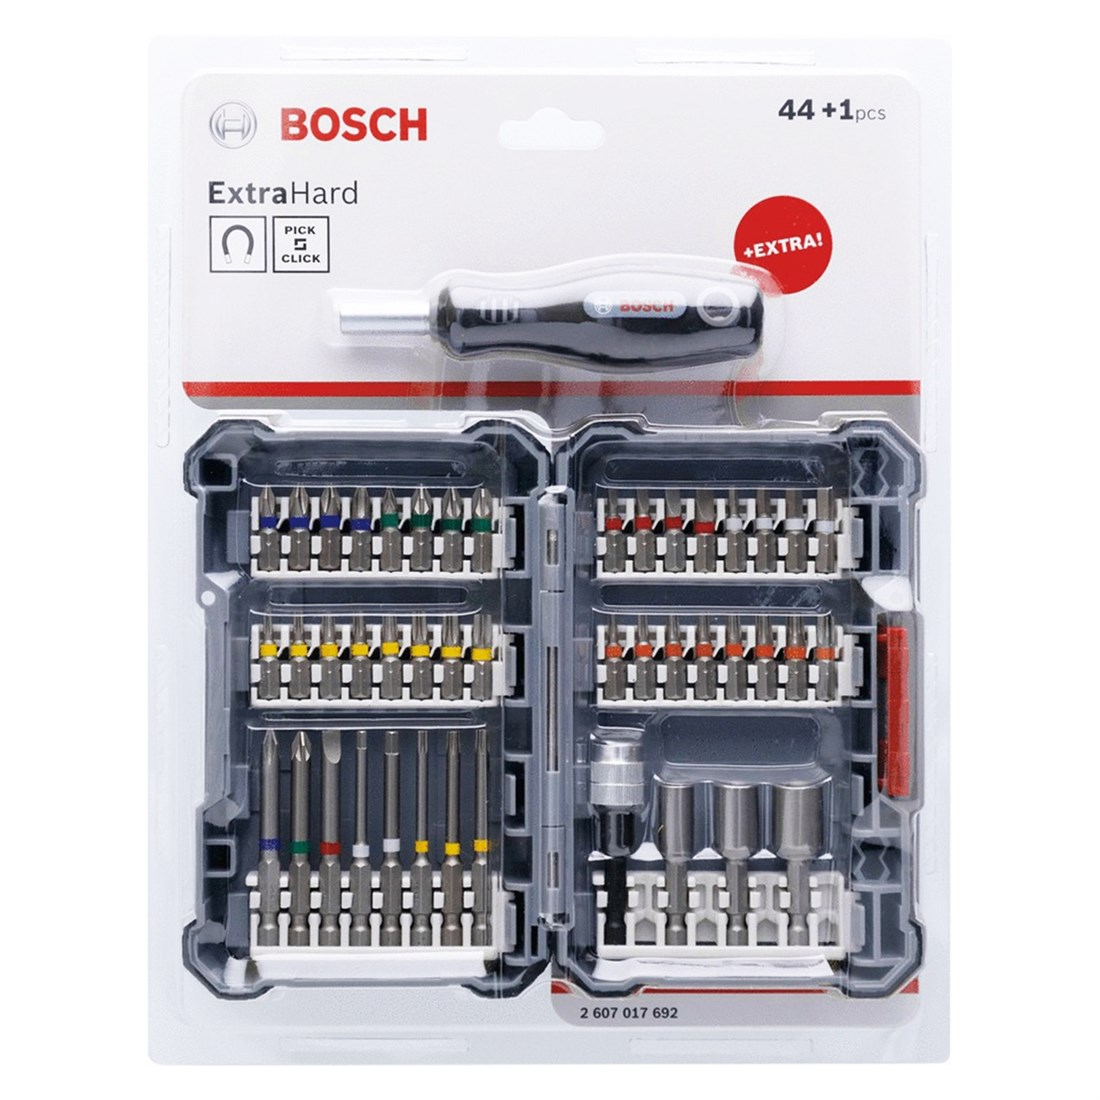 Bosch Profesyonel Vidalama Ucu Seti 44+1 Parça - 2607017692